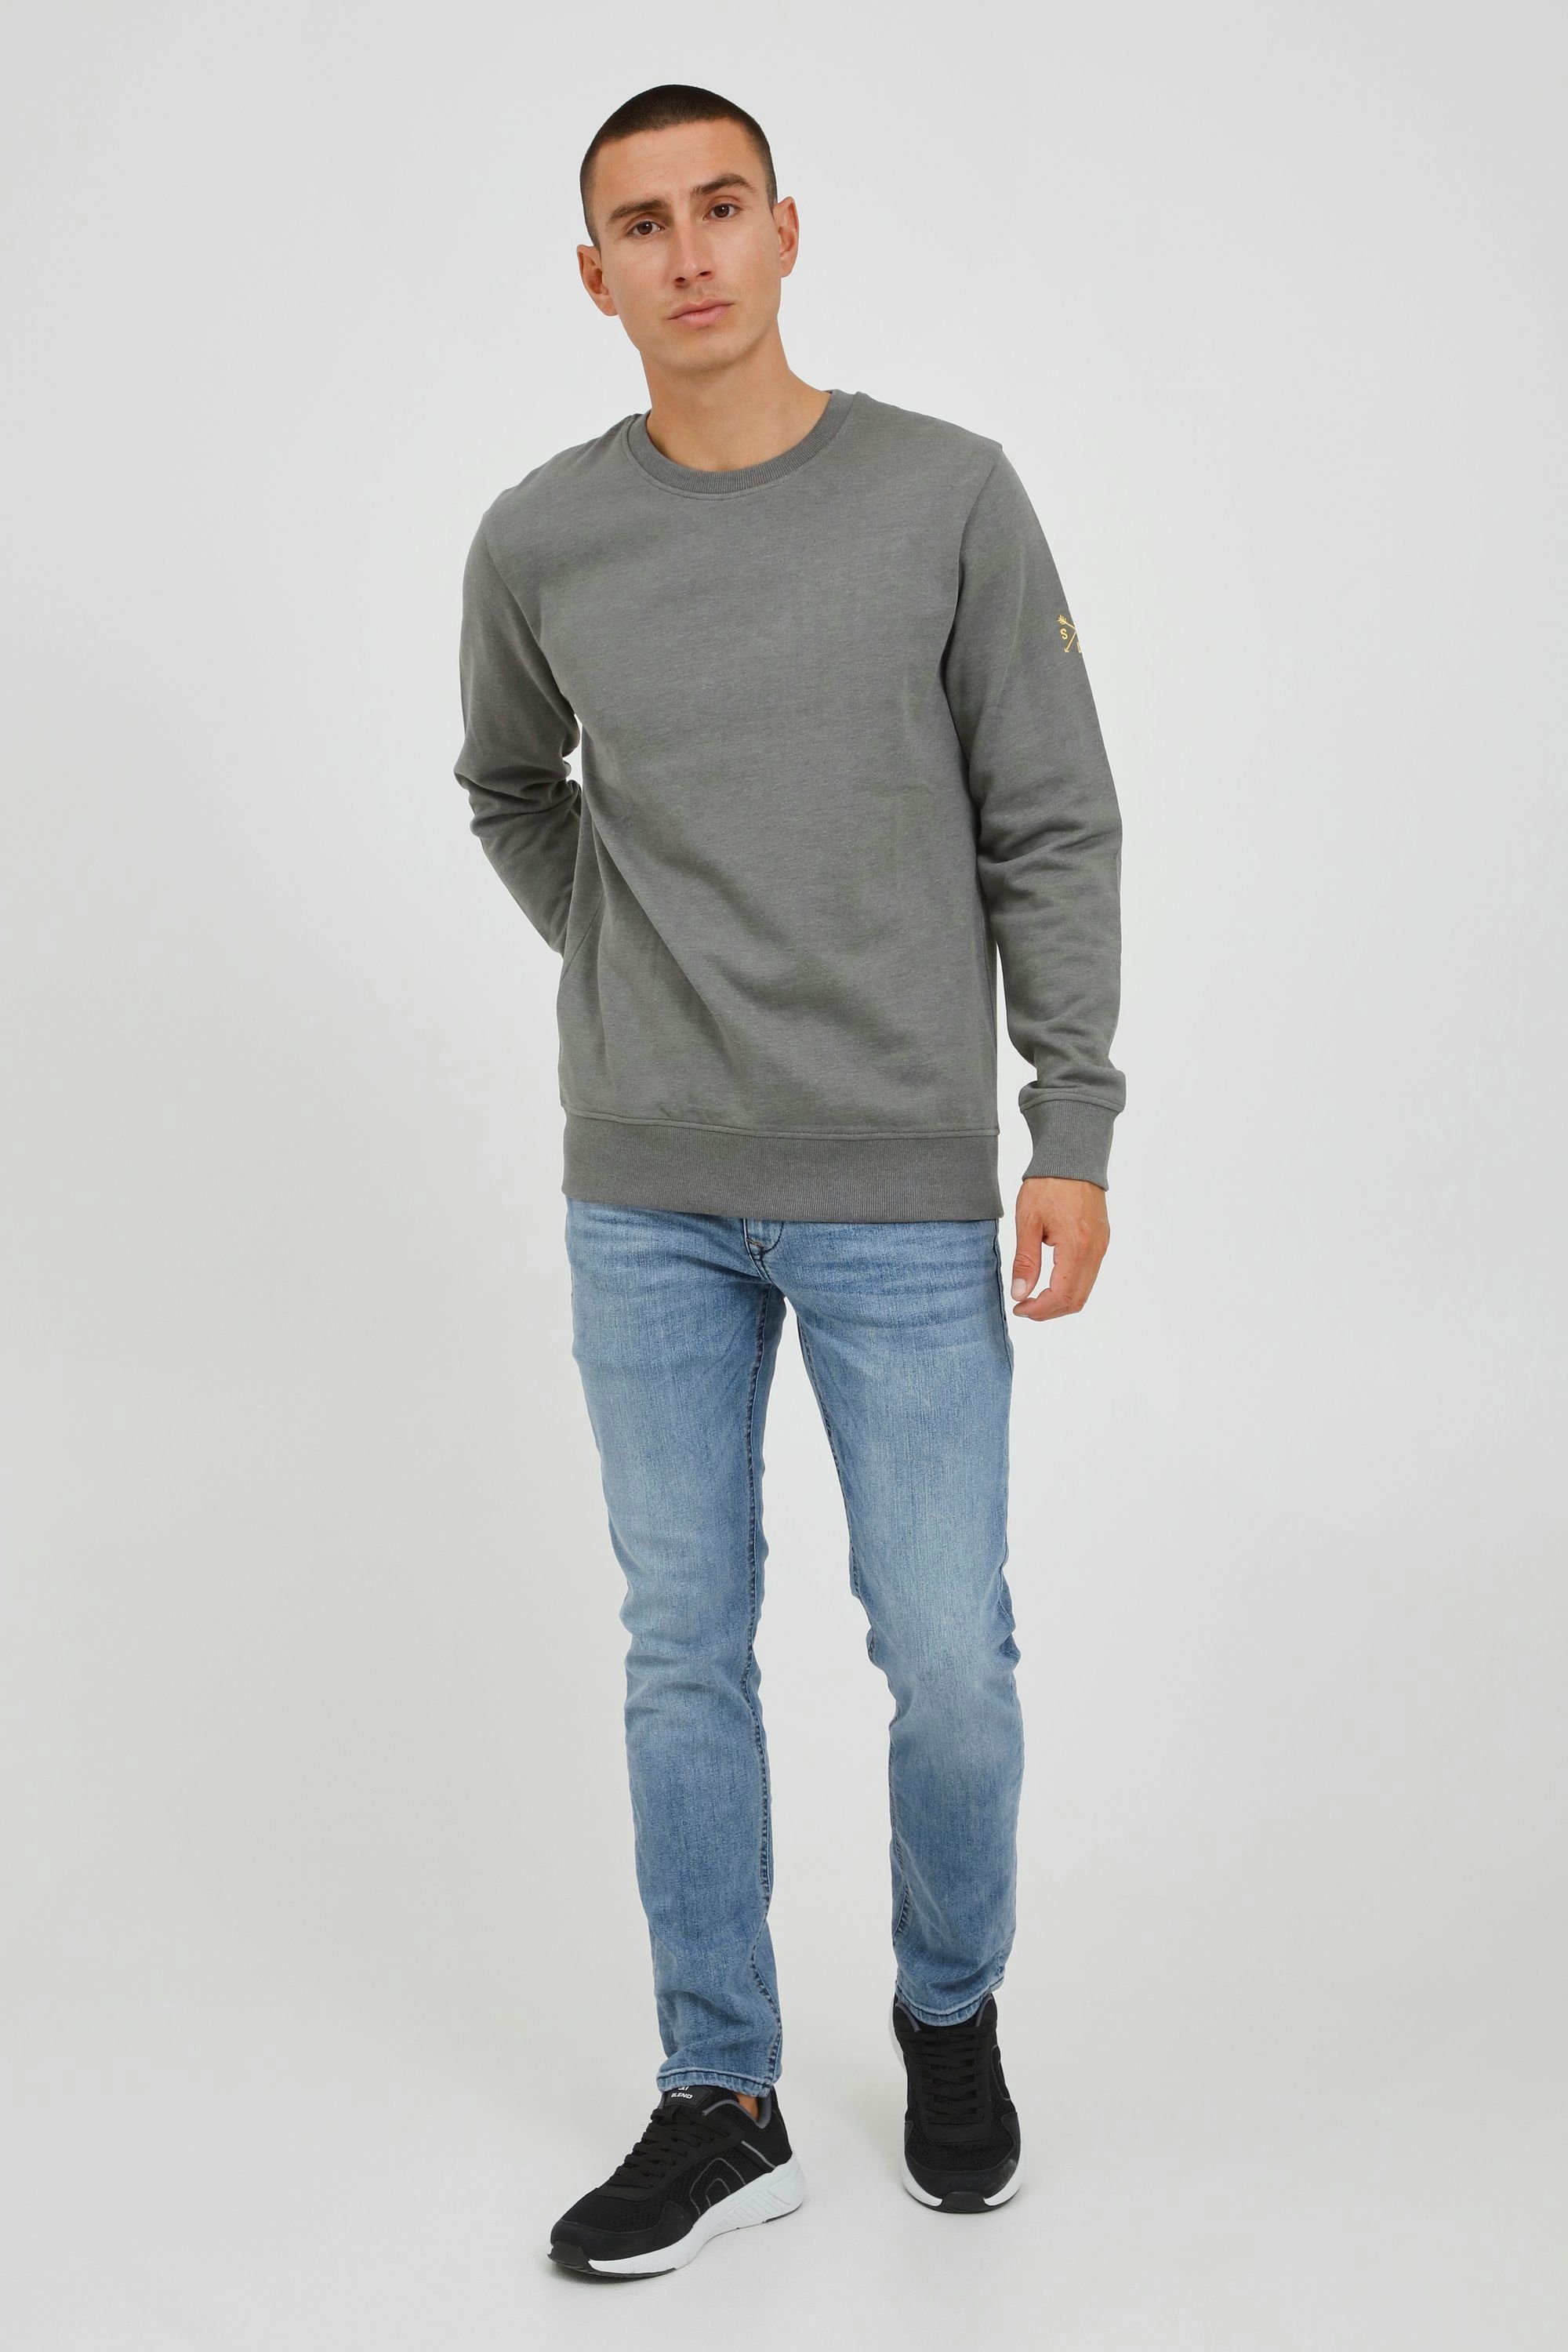 Rundhalsausschnitt SDKani mit Solid Sweatshirt Sweatshirt